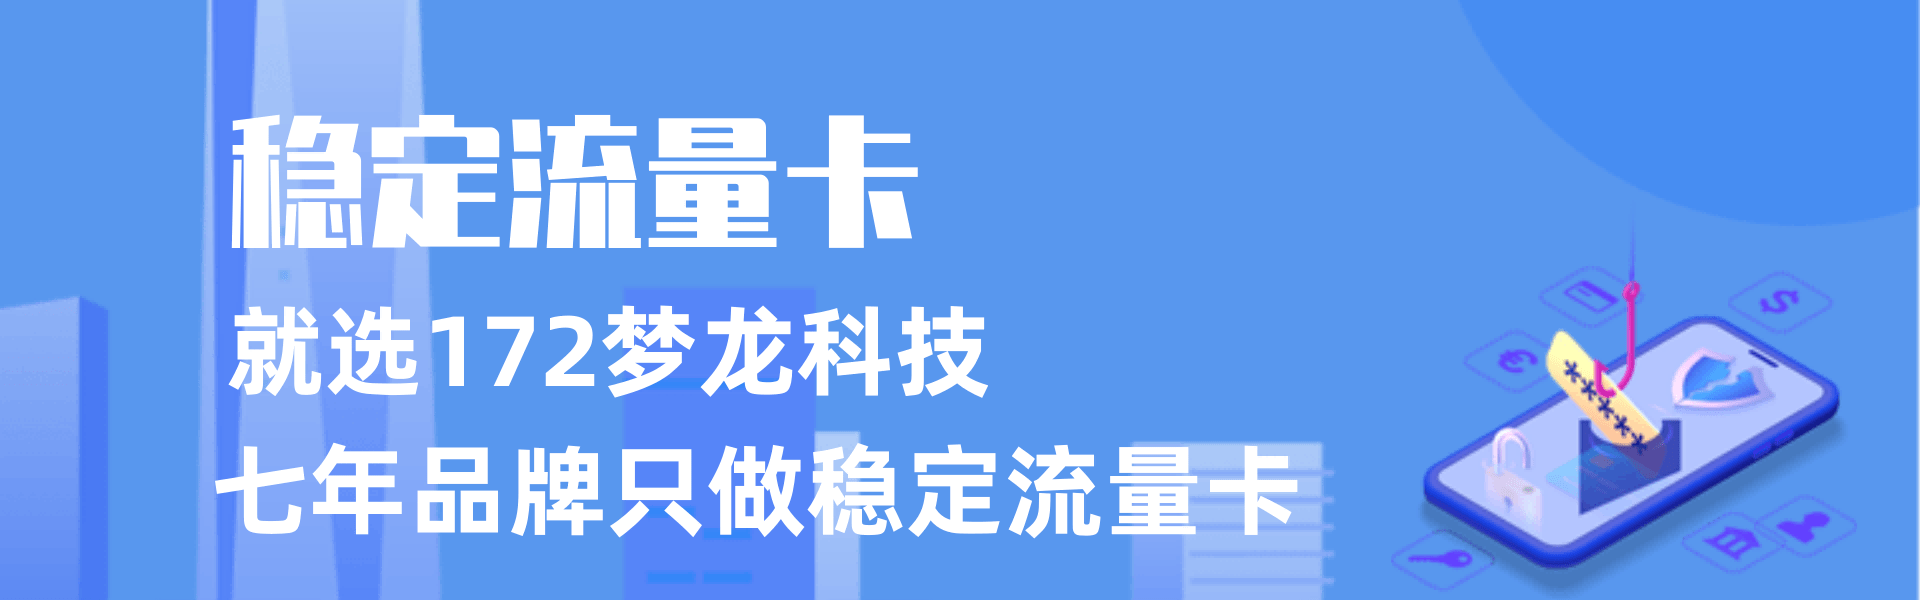 蓝色简约插画防范电信诈骗pc端横幅@凡科快图(1).png